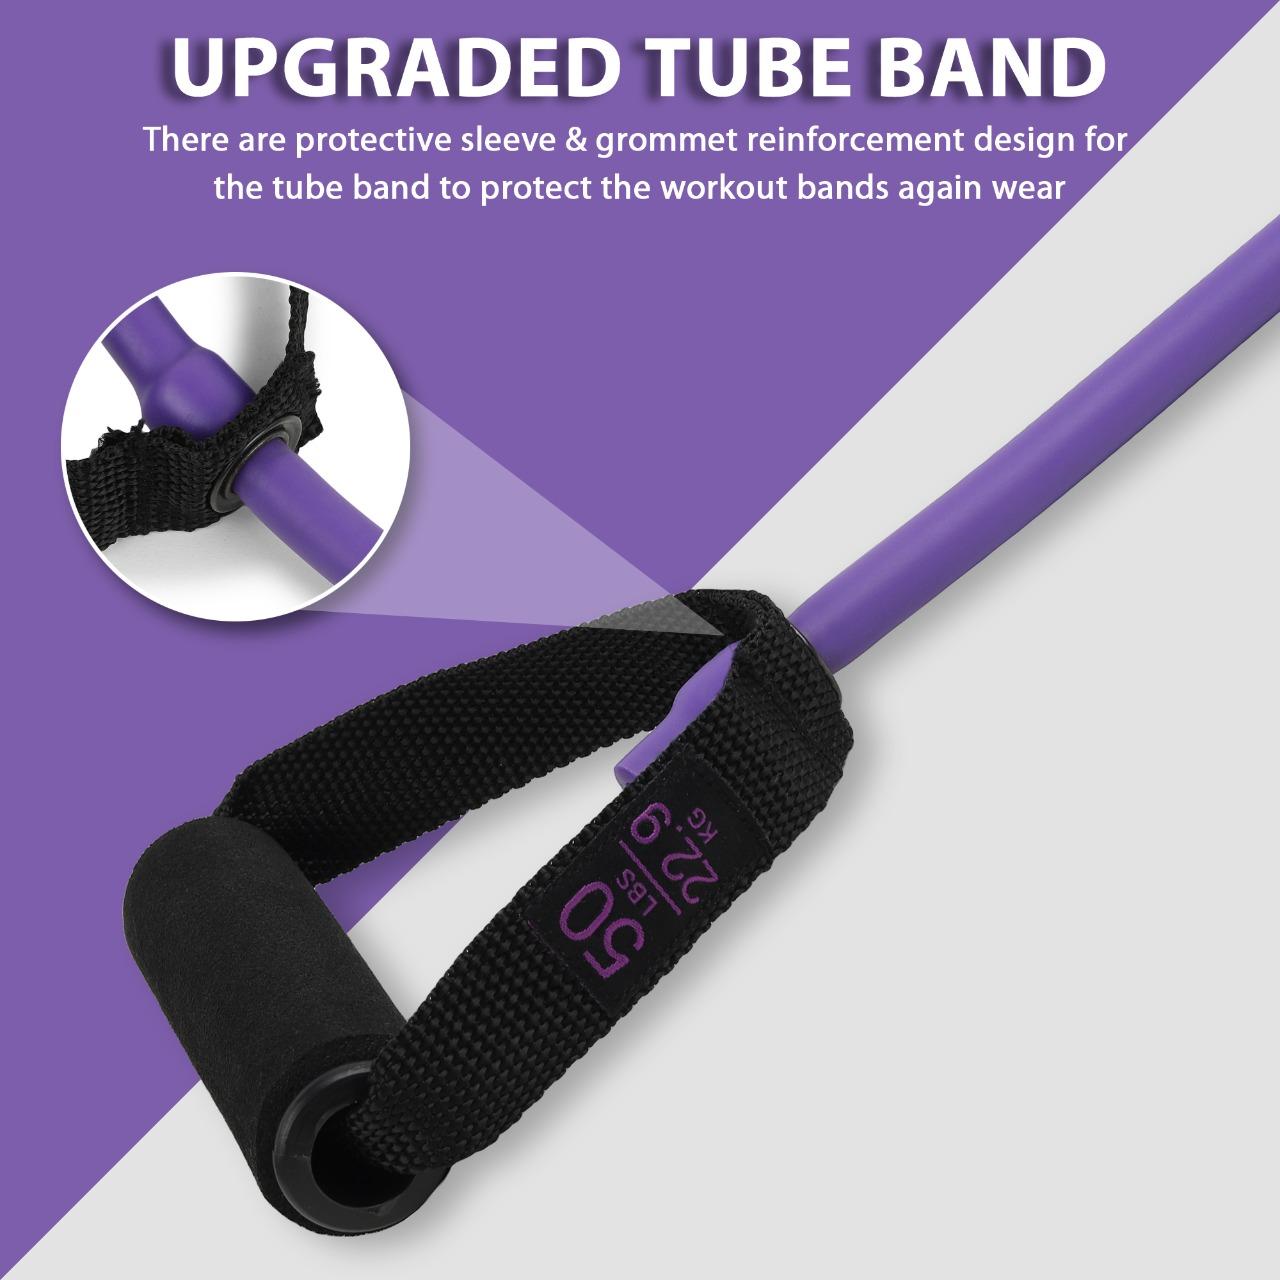 50 Lbs resistance band tube